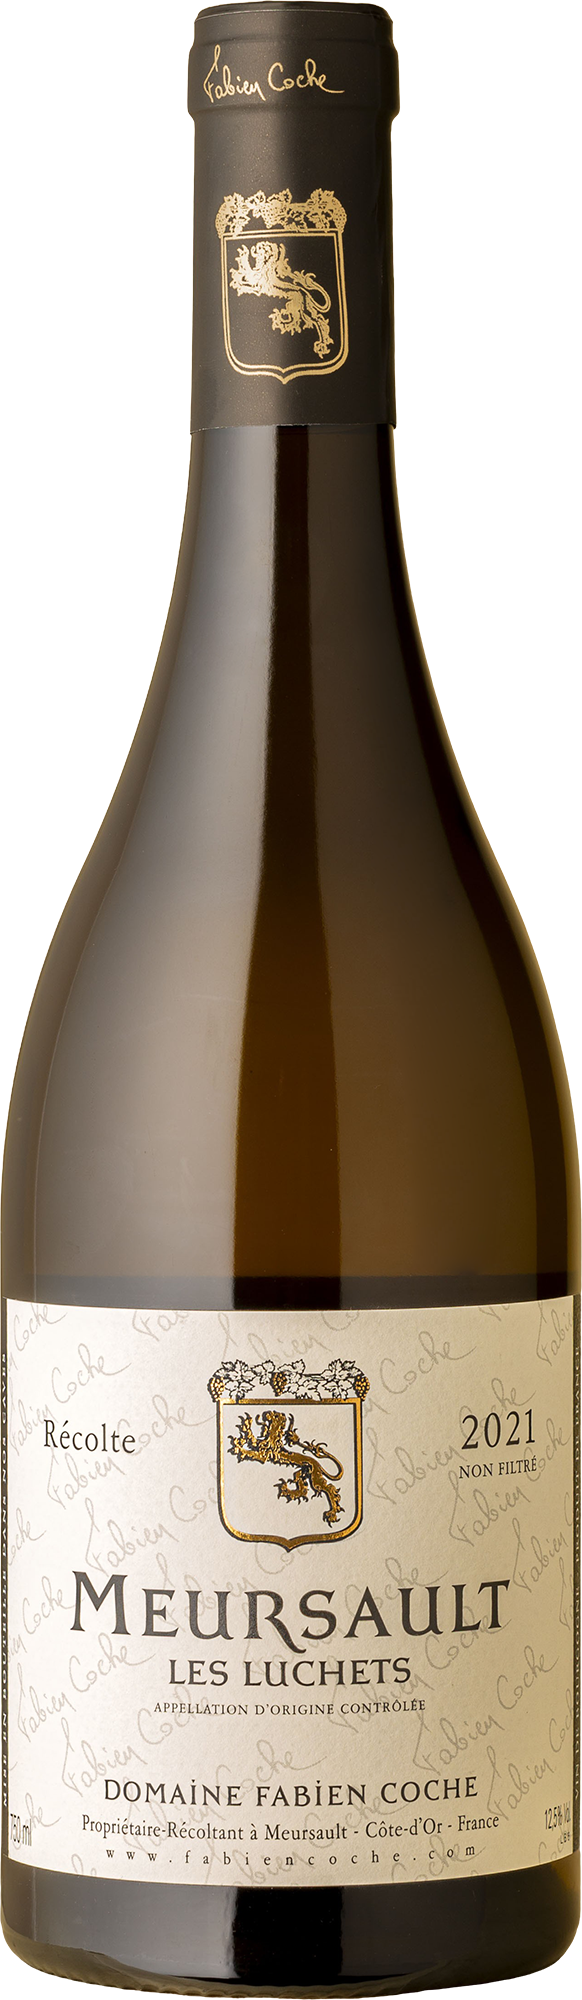 Fabien Coche - Les Luchets Meursault Chardonnay 2021 White Wine